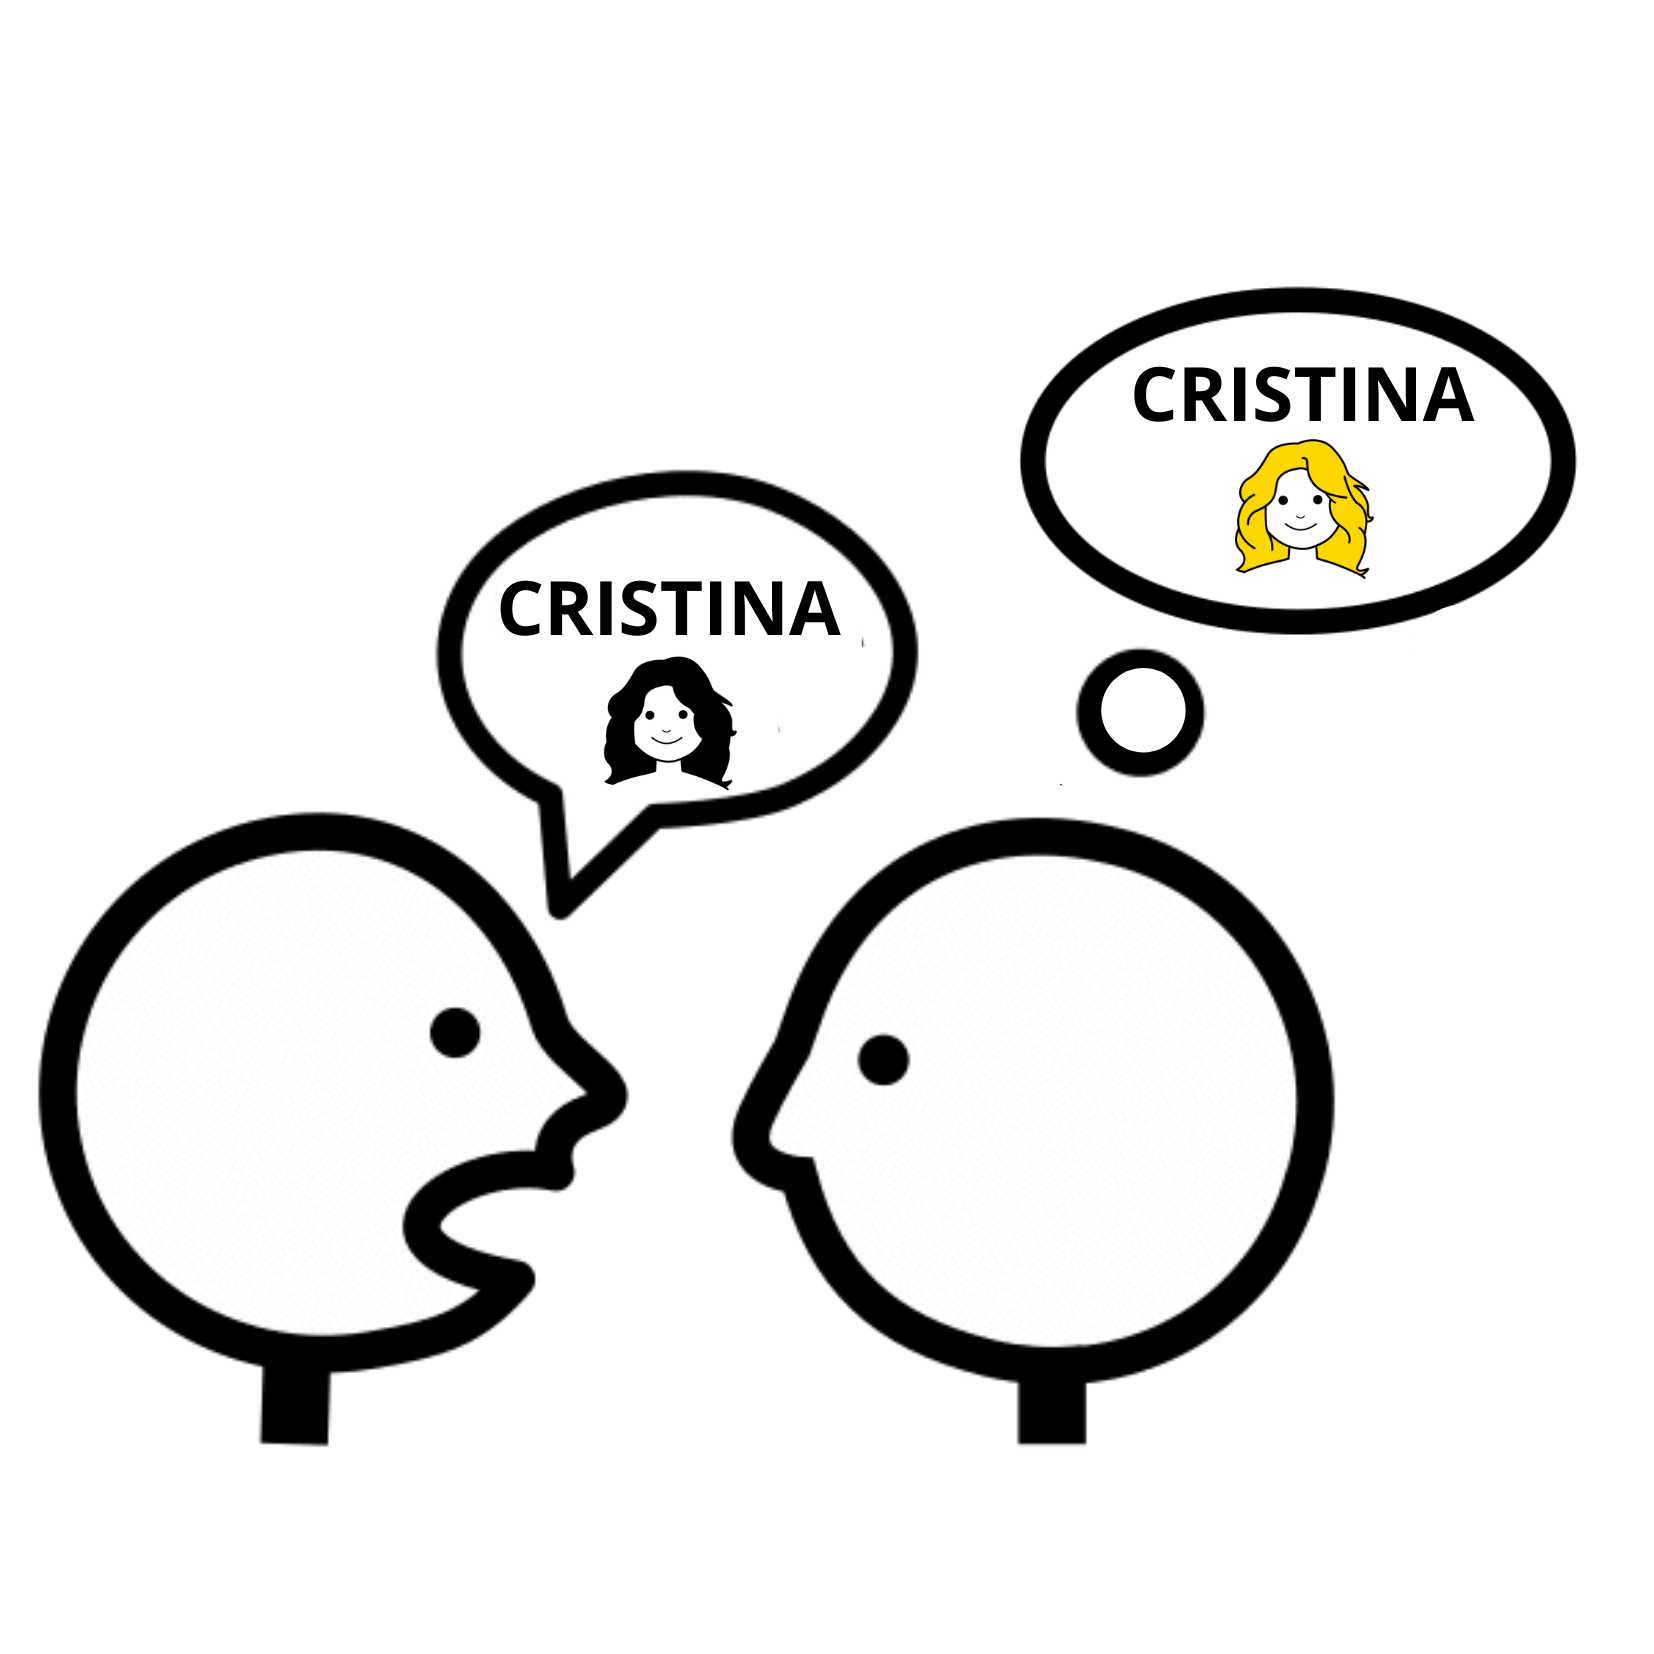 Dos personas. De una sale un bocadillo de texto con el nombre Cristina y la imagen de una mujer morena. De la otra persona sale un bocadillo de pensamiento con  el nombre Cristina y la imagen de una mujer rubia.